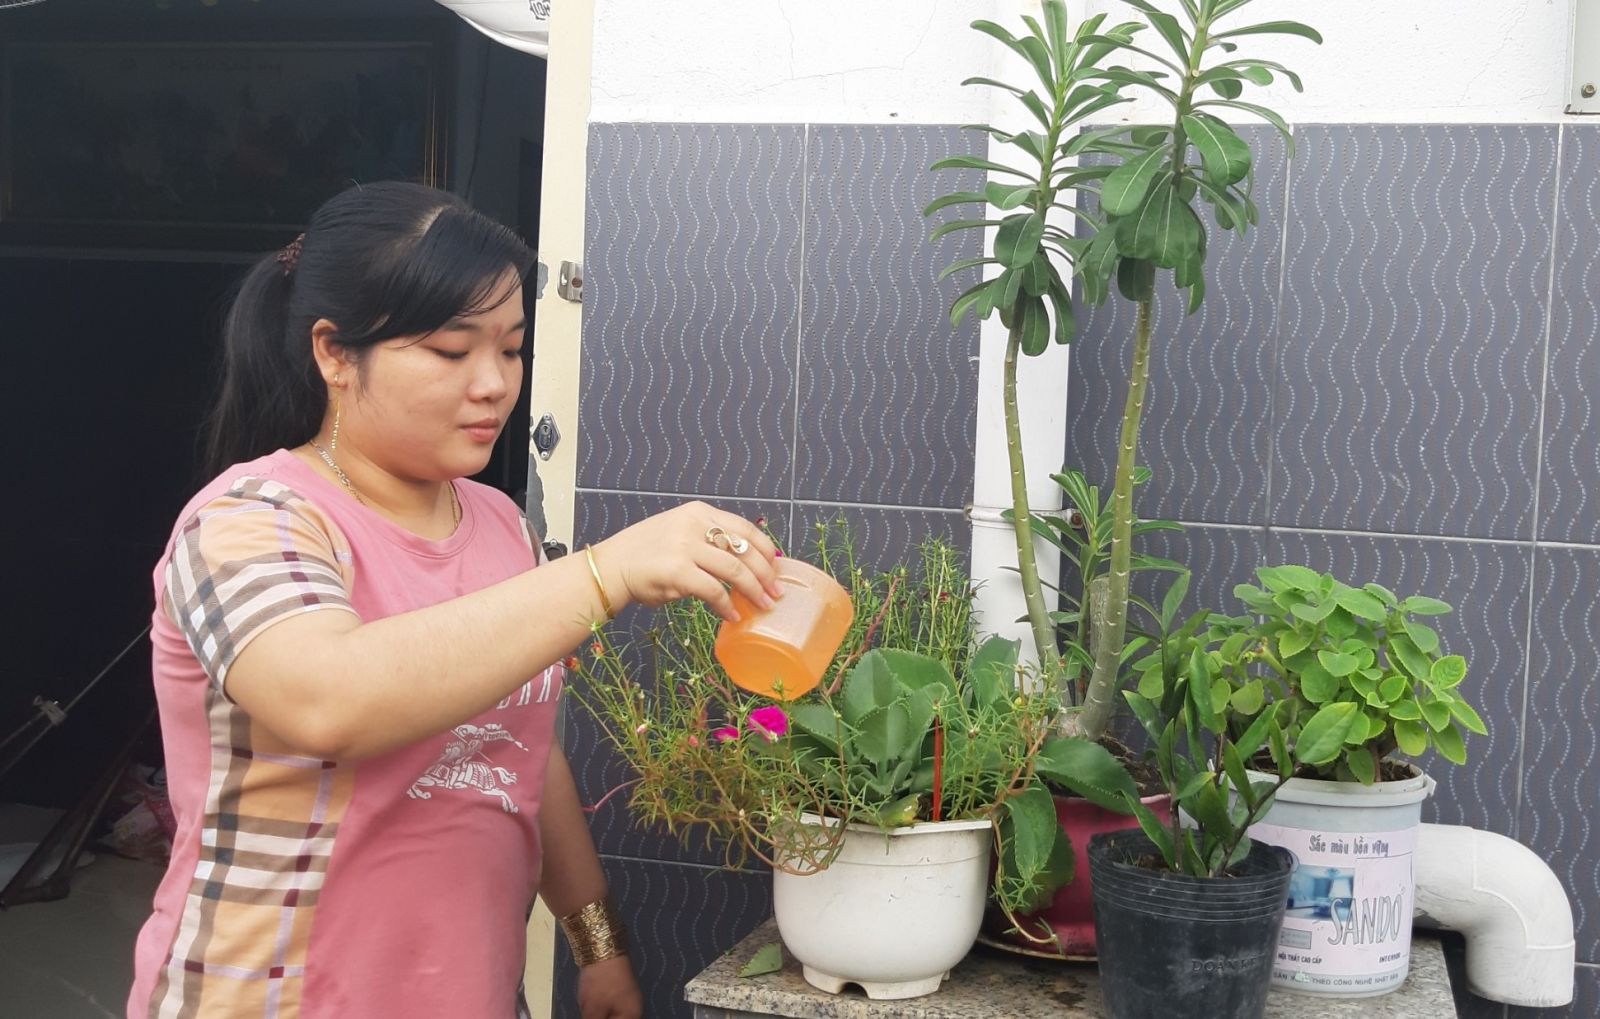 Không chỉ chủ nhà trọ trồng cây xanh, chị Nguyễn Thị Cúc - người thuê tại nhà trọ Minh Đại, cũng tự trồng cây, tạo thêm không gian xanh cho phòng